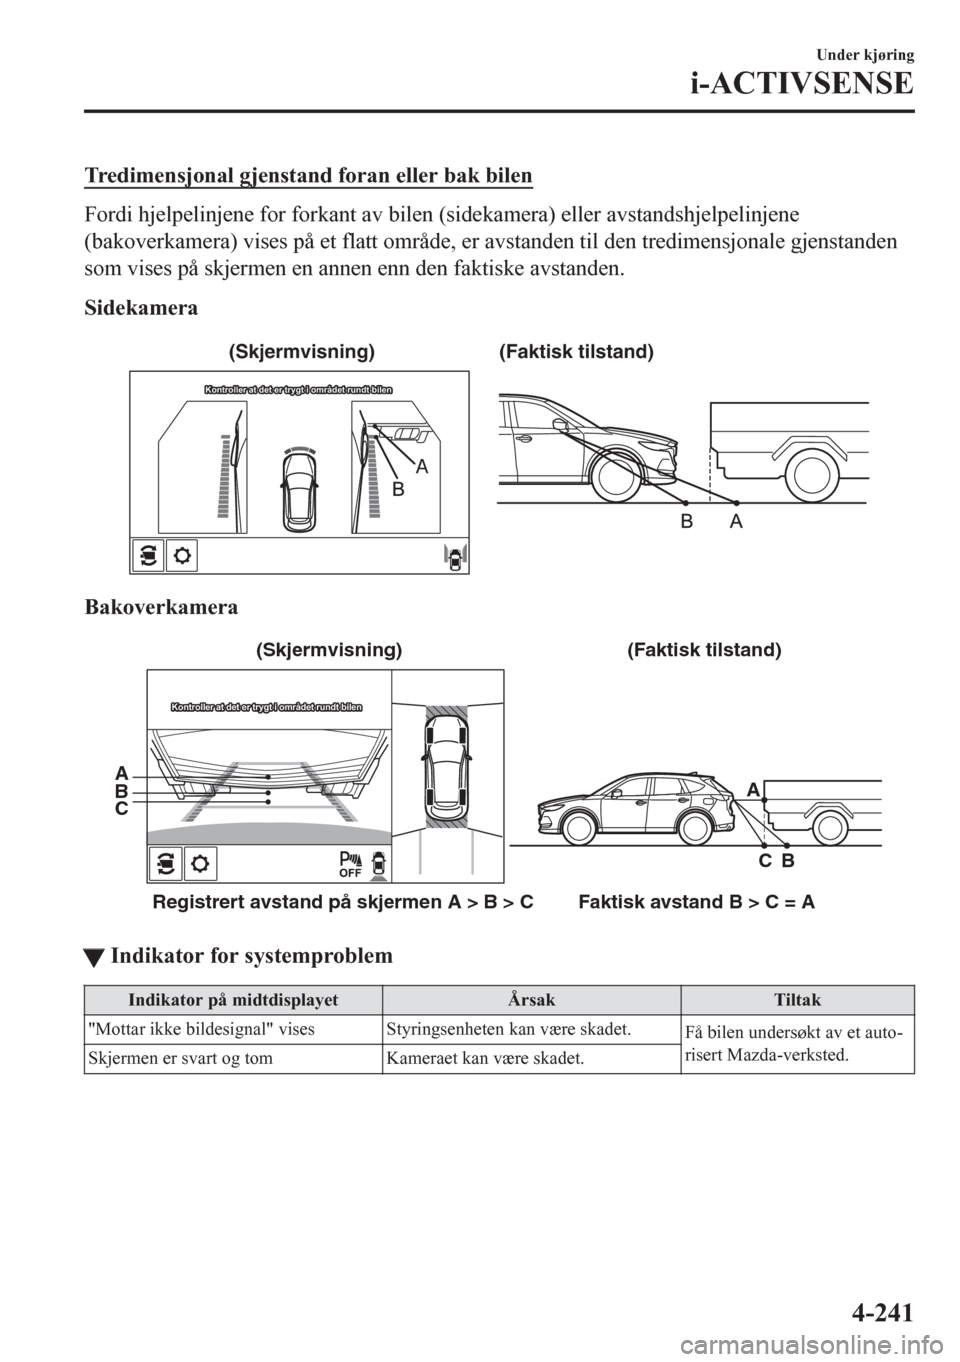 MAZDA MODEL CX-5 2018  Brukerhåndbok (in Norwegian) Tredimensjonal gjenstand foran eller bak bilen
Fordi hjelpelinjene for forkant av bilen (sidekamera) eller avstandshjelpelinjene
(bakoverkamera) vises på et flatt område, er avstanden til den tredim